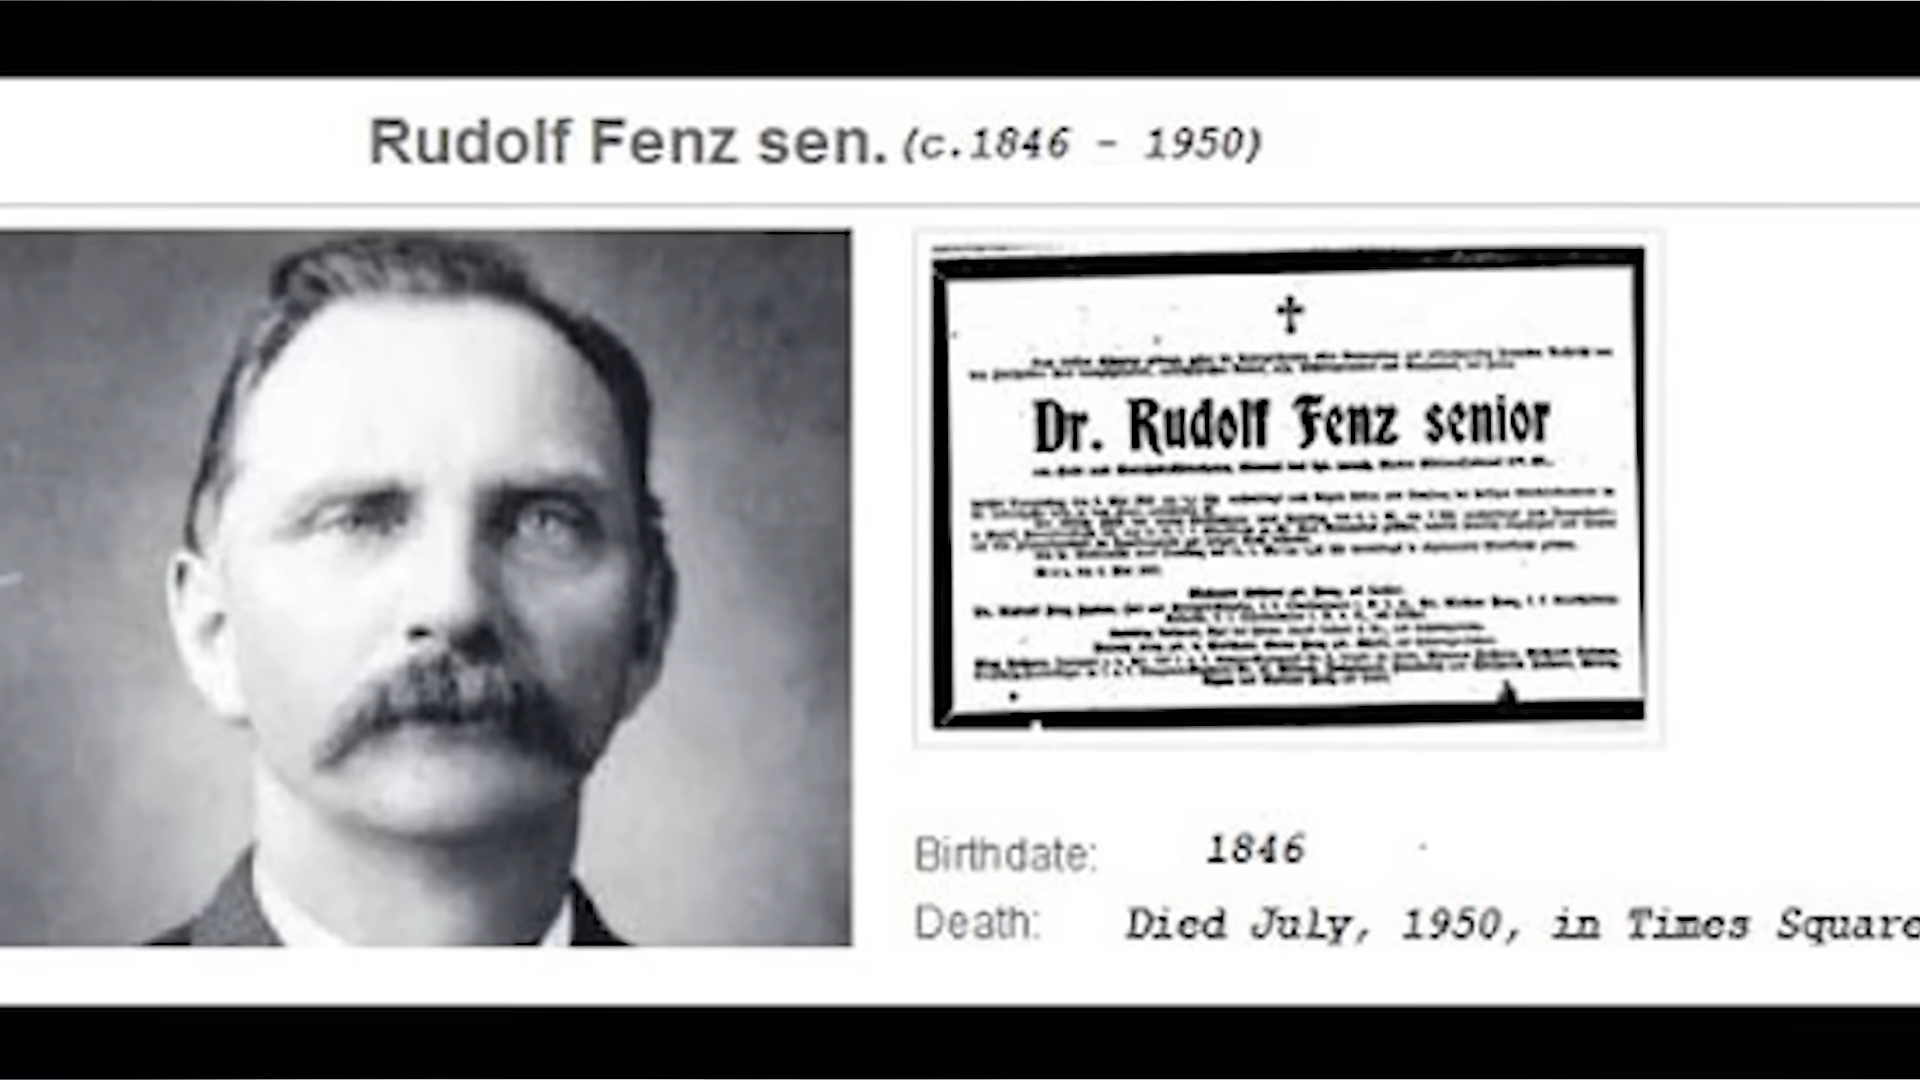 Rudolph Fentz - Rudolf Fenz sen. c.18461950 Dr. Rudolf Fenz senior Birthdate 1846 Death Died , in Times Square